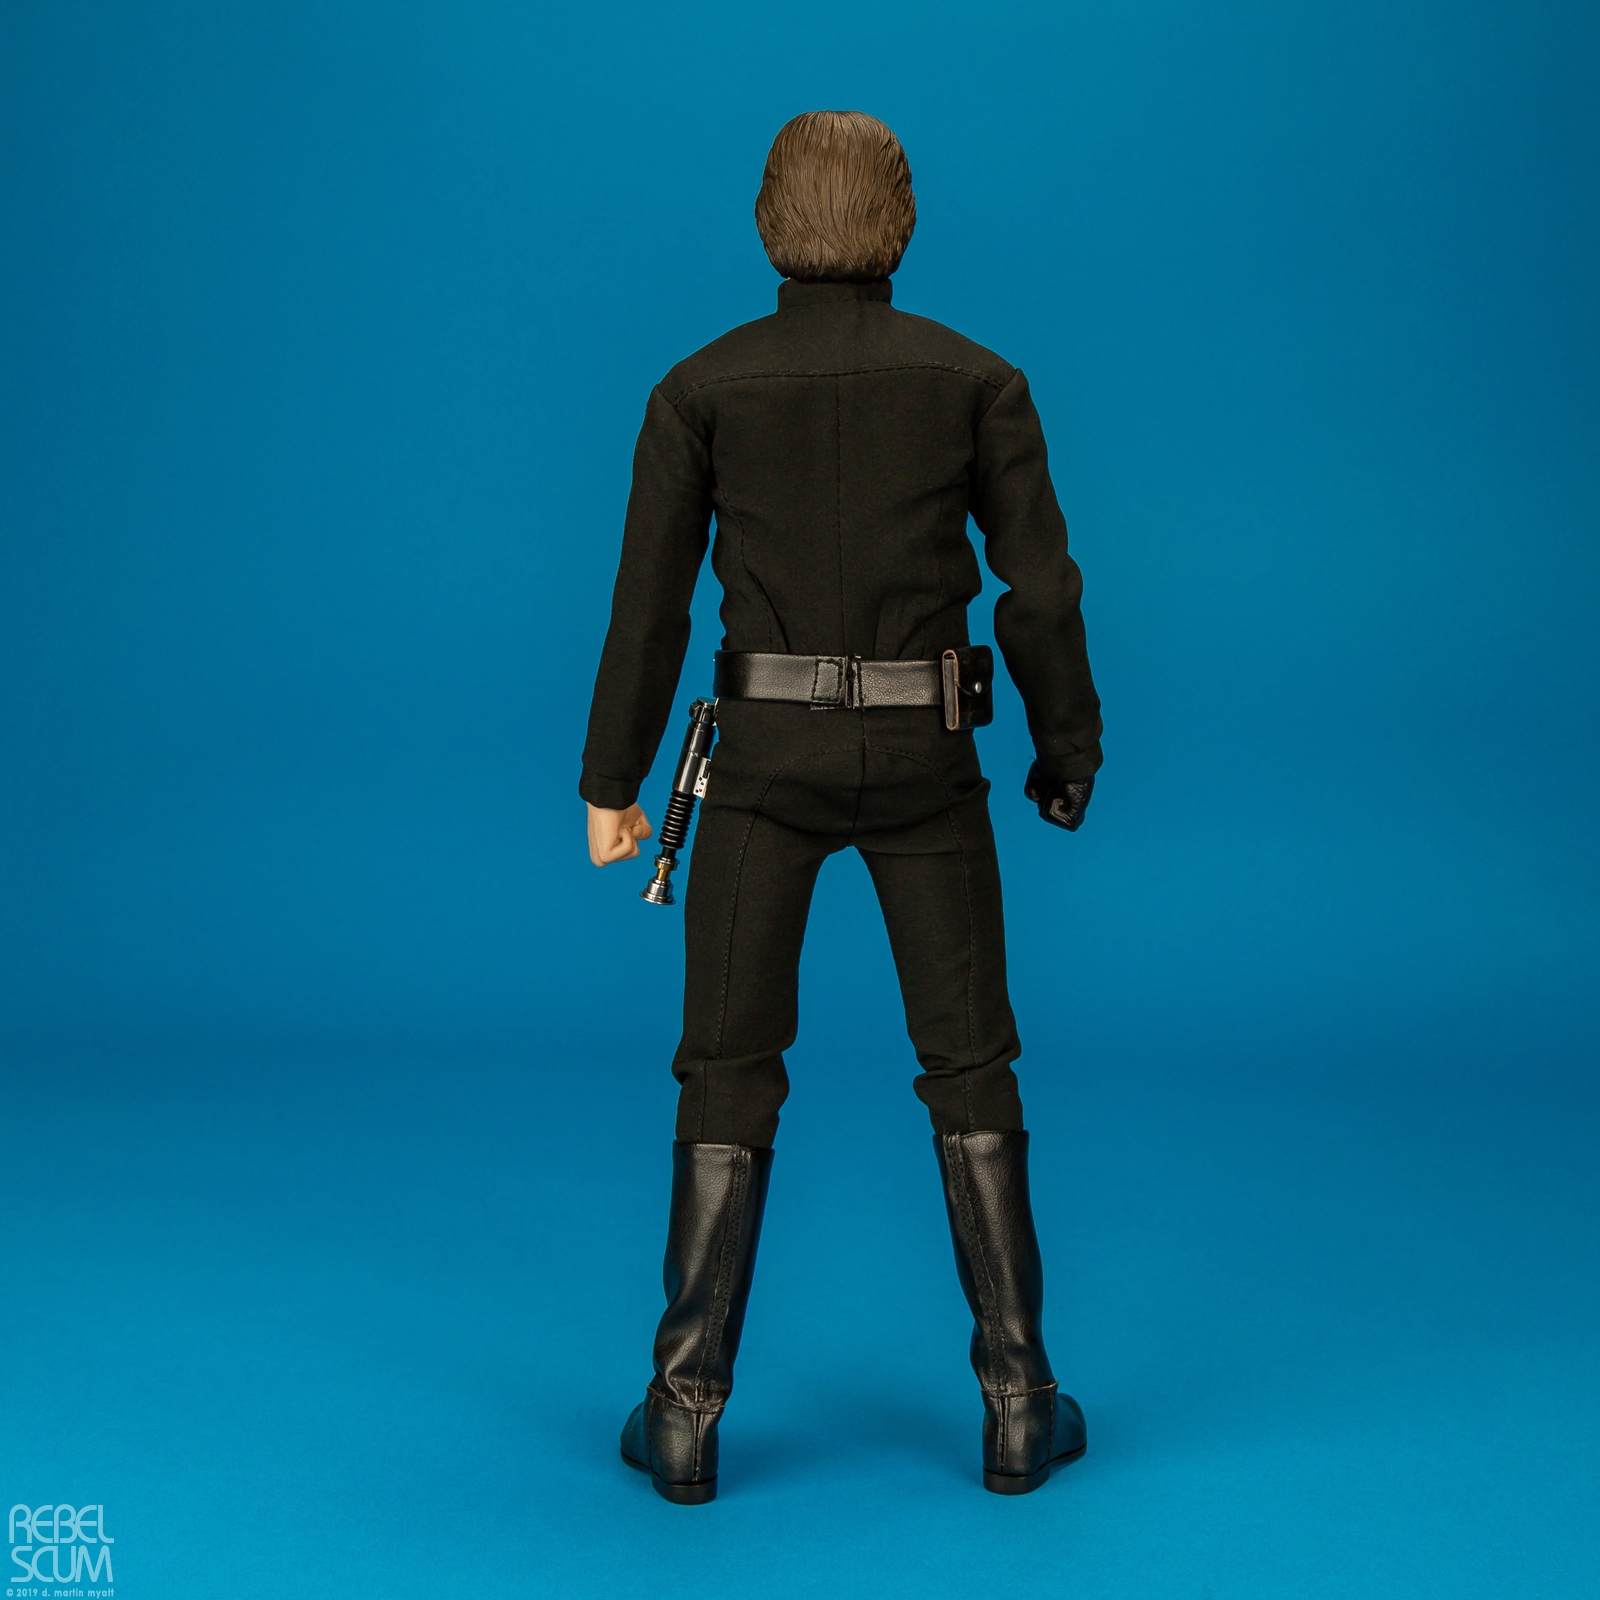 Luke-Skywalker-MMS429-Return-Of-The-Jedi-Hot-Toys-020.jpg